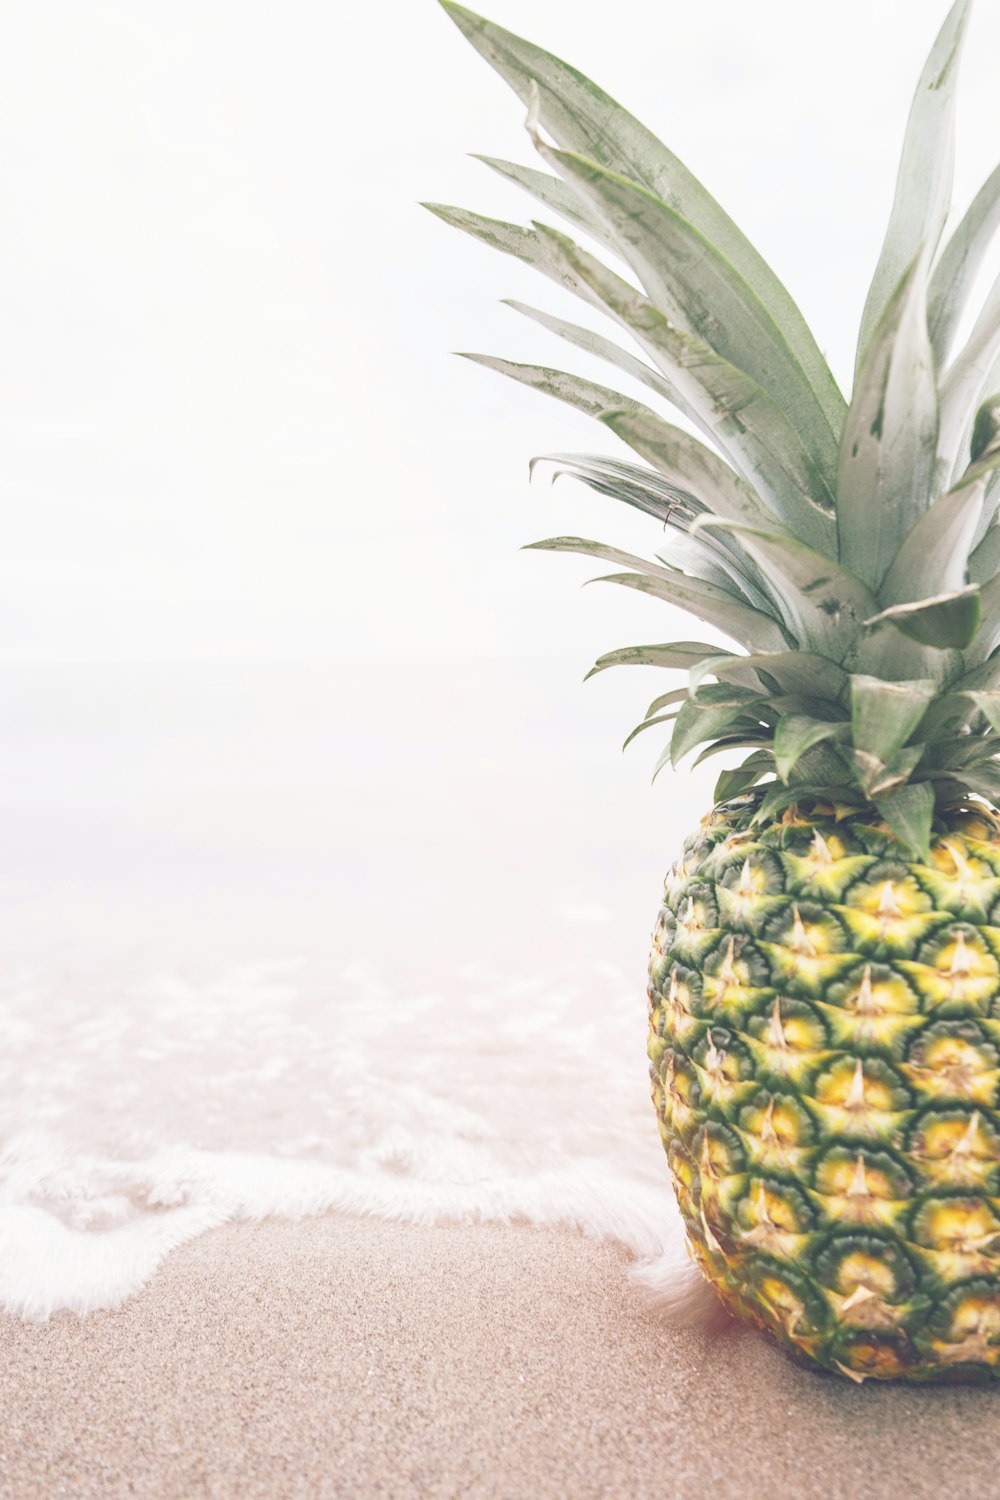 pineapple near seashore